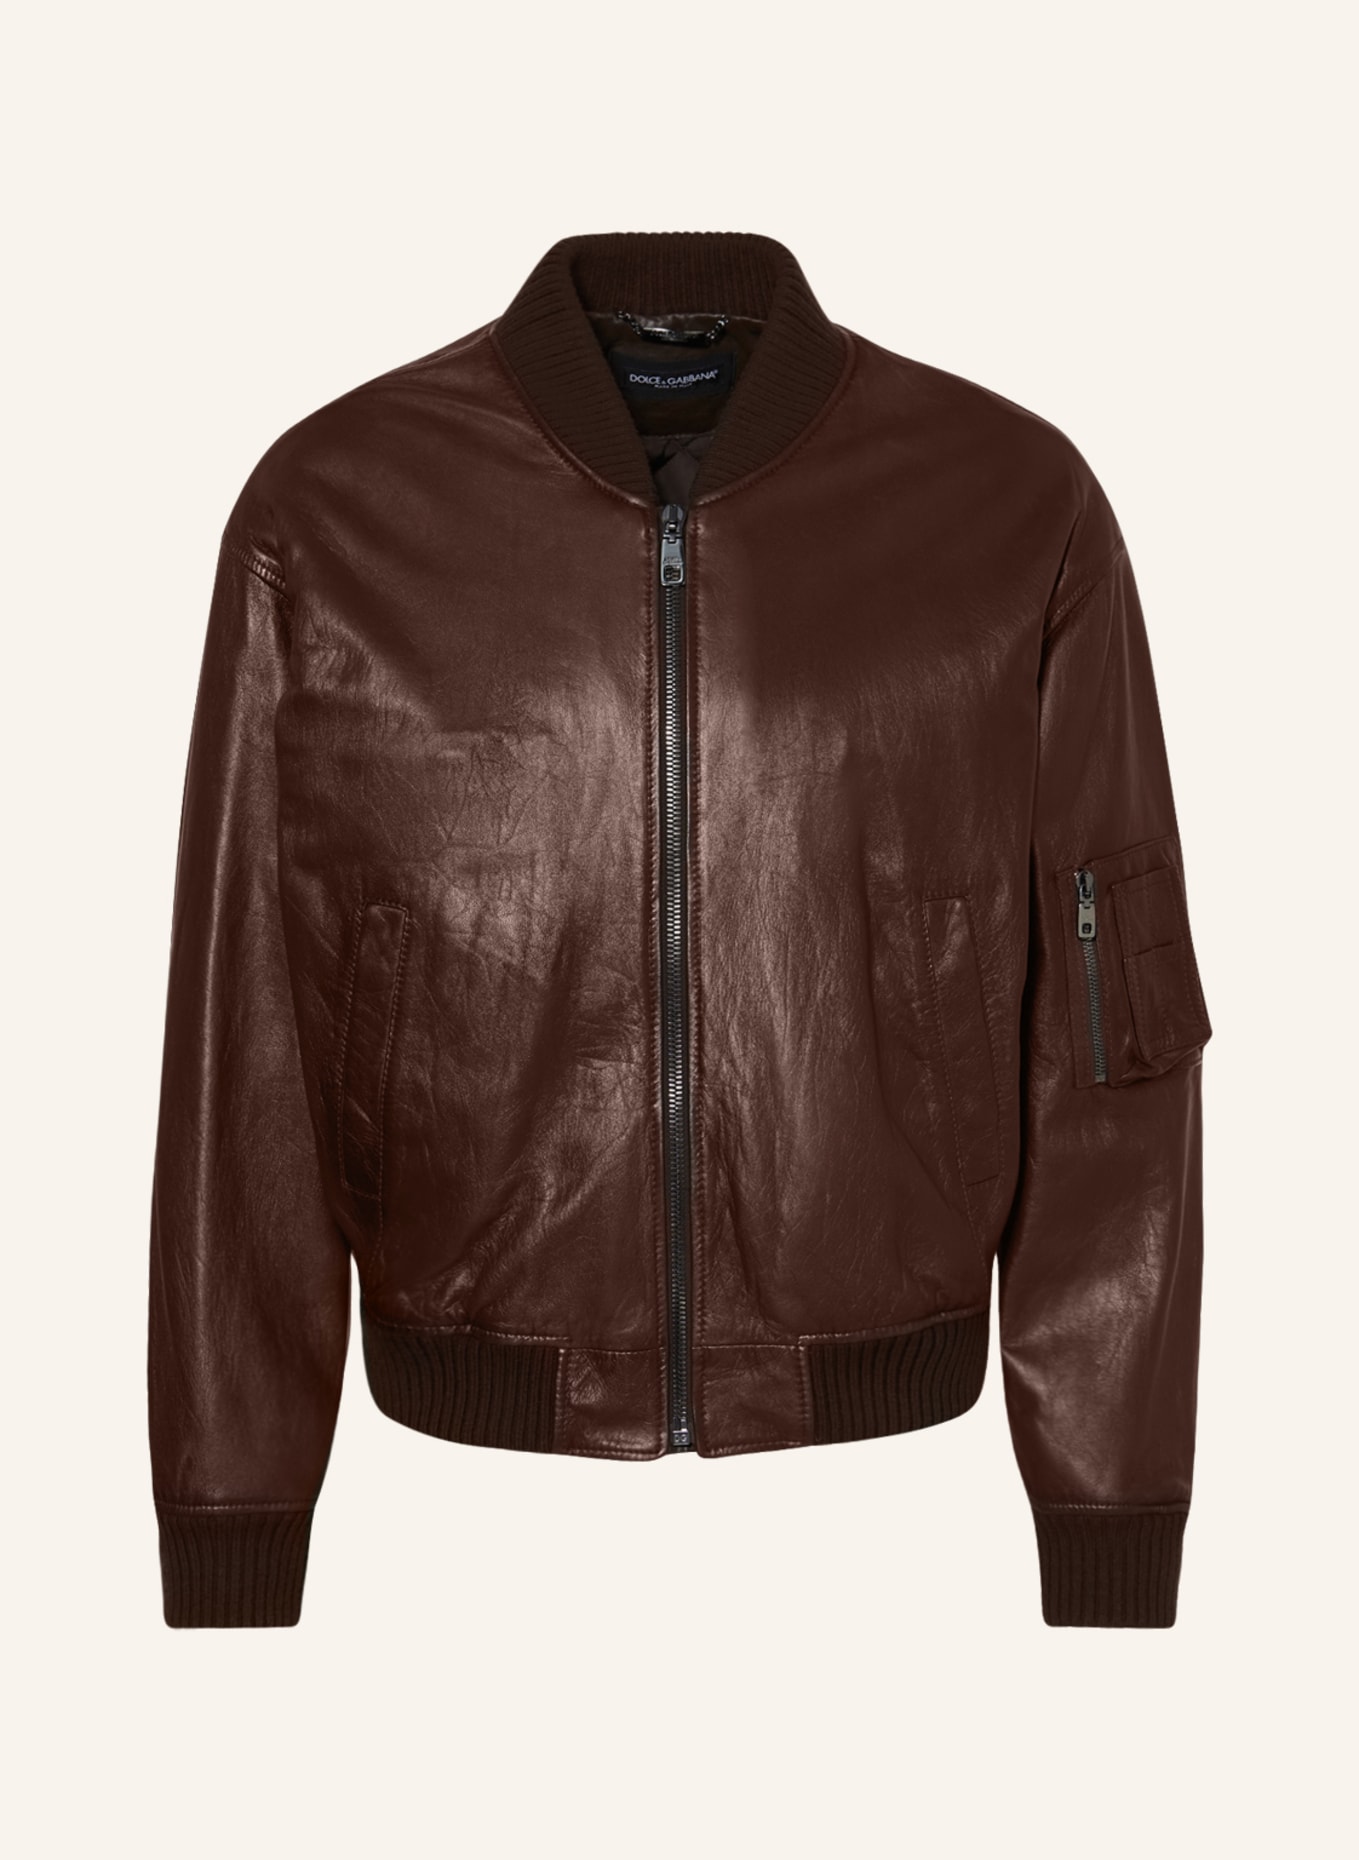 DOLCE & GABBANA Leather bomber jacket, Color: DARK BROWN (Image 1)